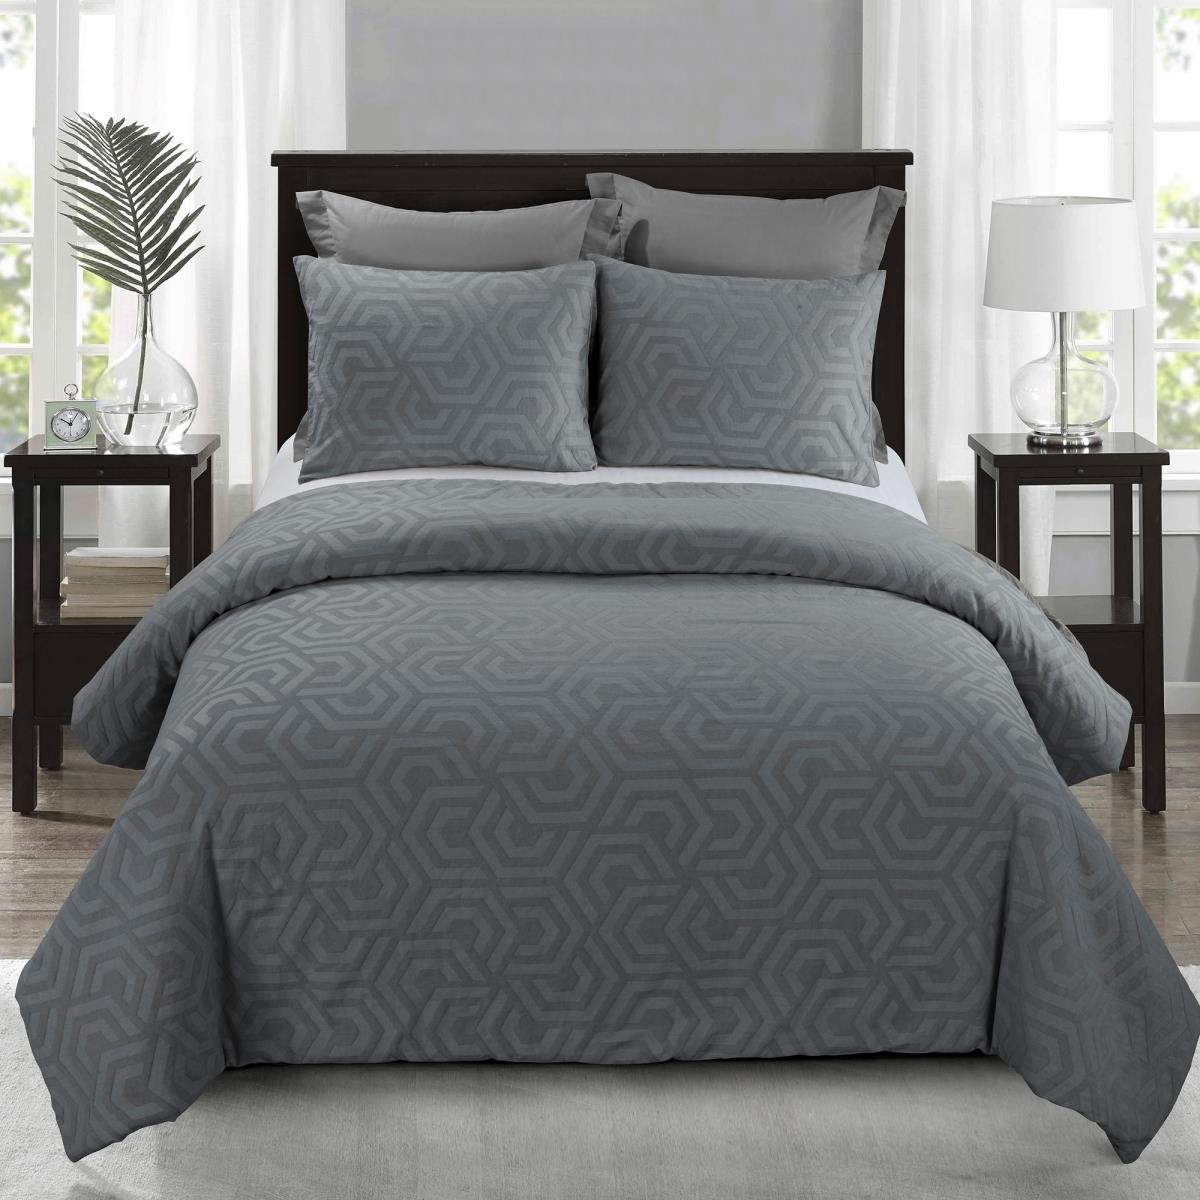 Y00718 Queen Size Comforter Set - Seville Grey